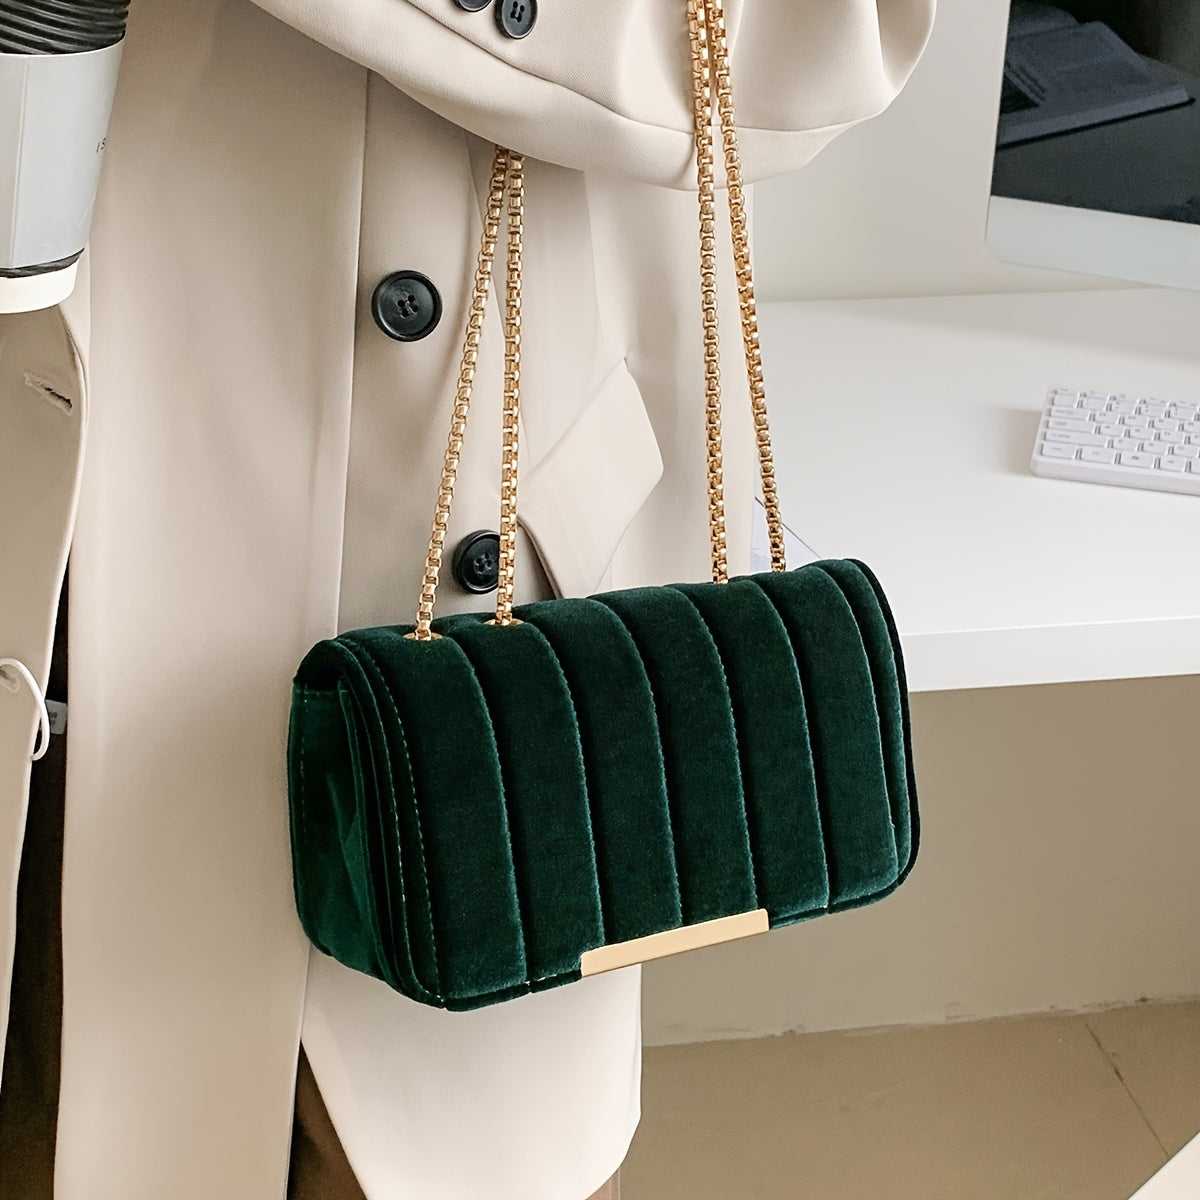 realaiot Vintage Textured Velvet Square Shoulder Bag, Solid Color Elegant Chain Bag, Women's Classic Handbag Wallet